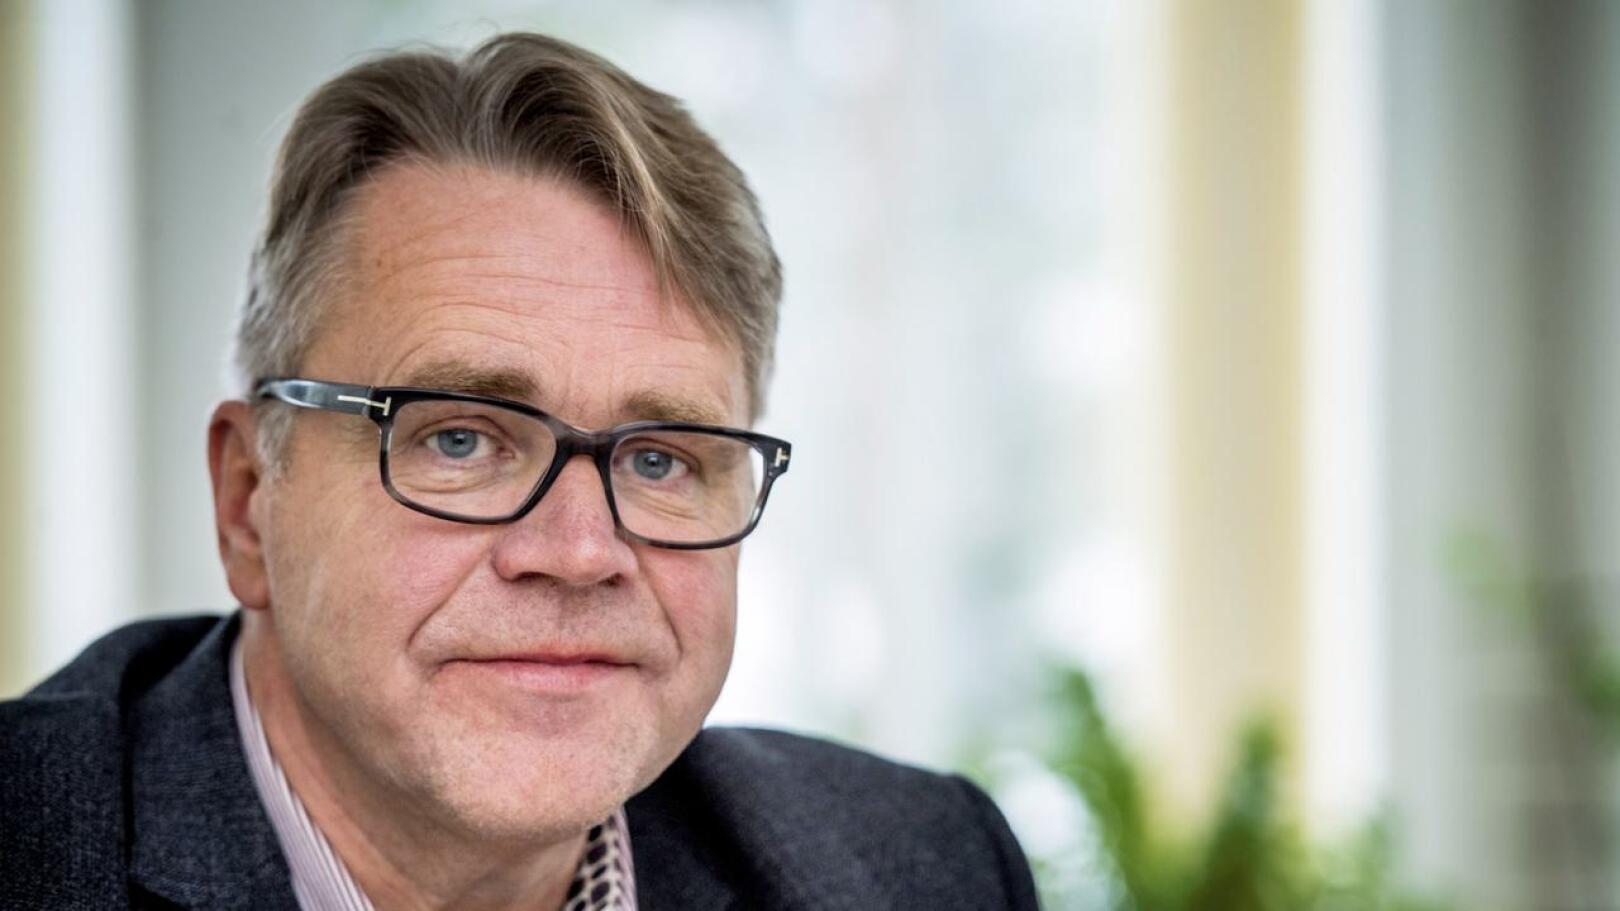 (arkistokuva) Luotolainen kansanedustaja Peter Östman on huolissaan maatalouden tilasta.